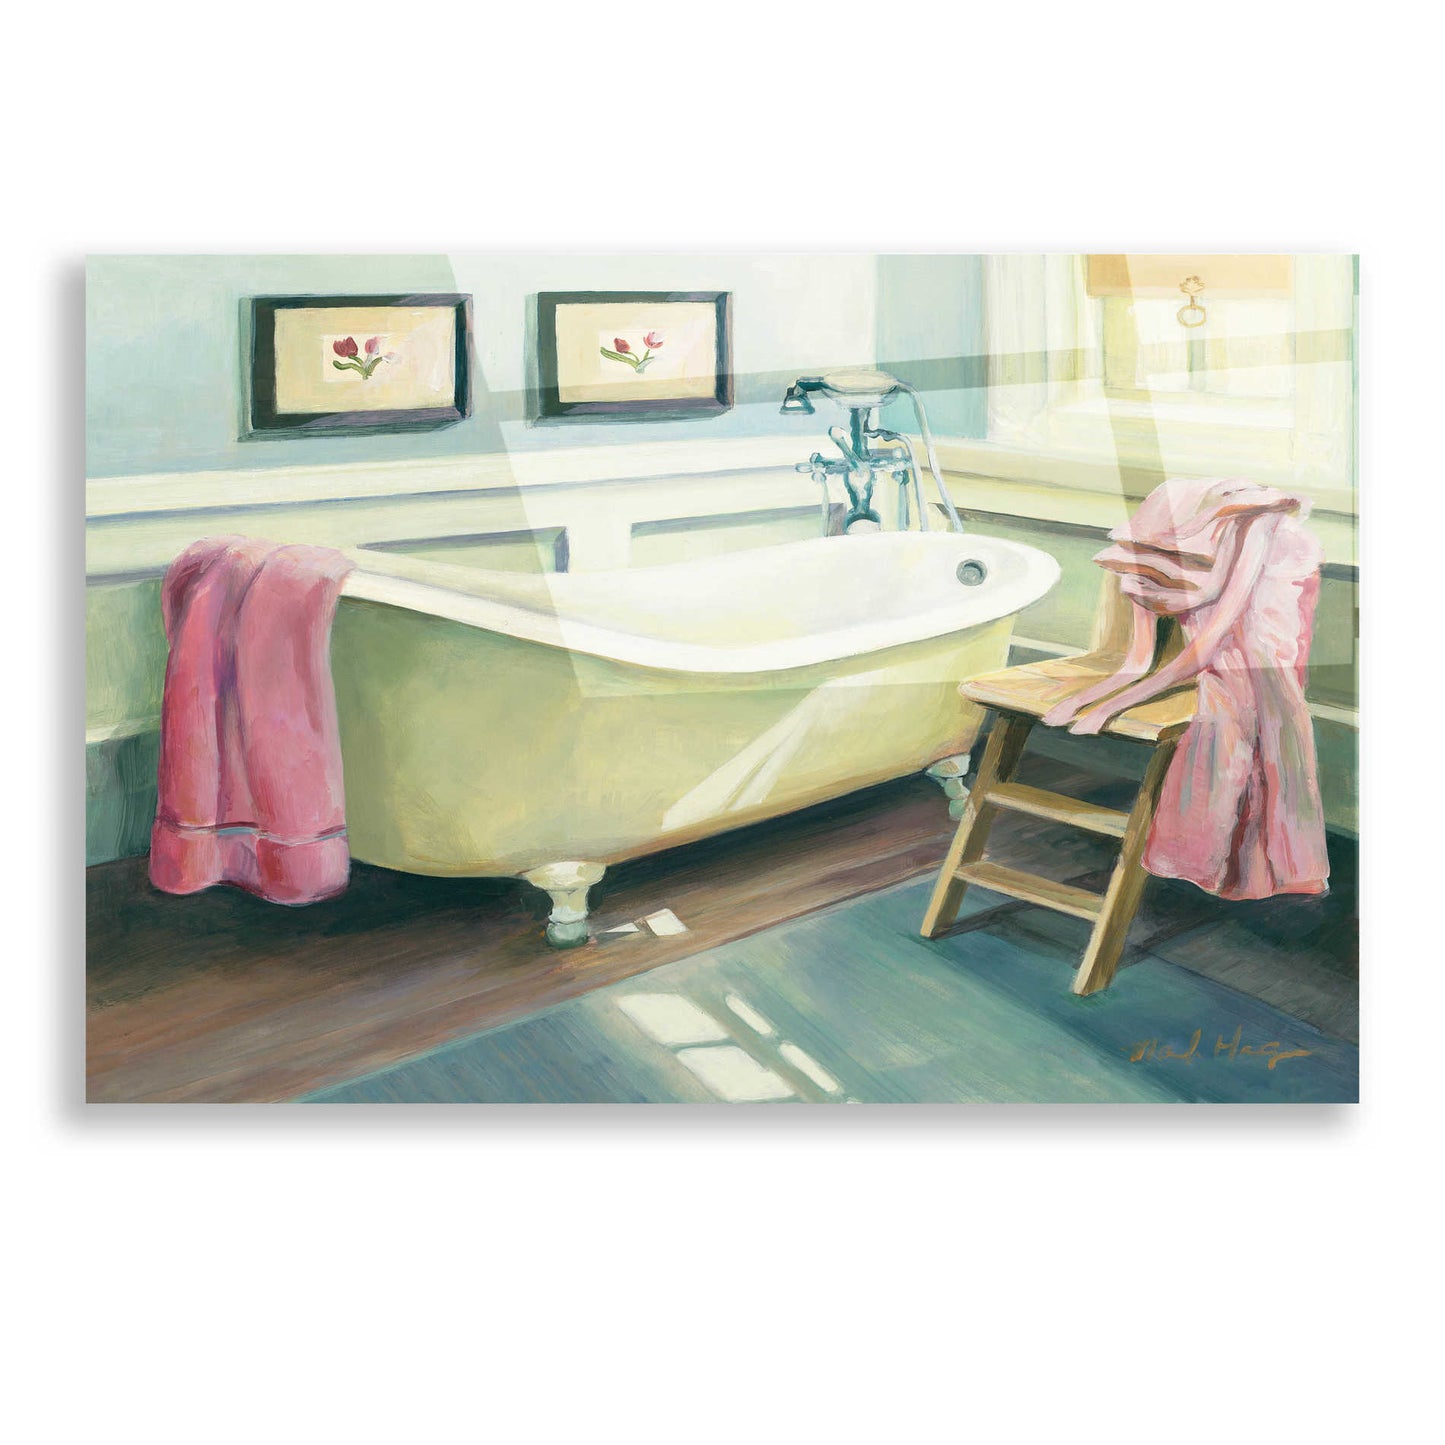 Epic Art 'Cottage Bathtub' by Marilyn Hageman, Acrylic Glass Wall Art,16x12